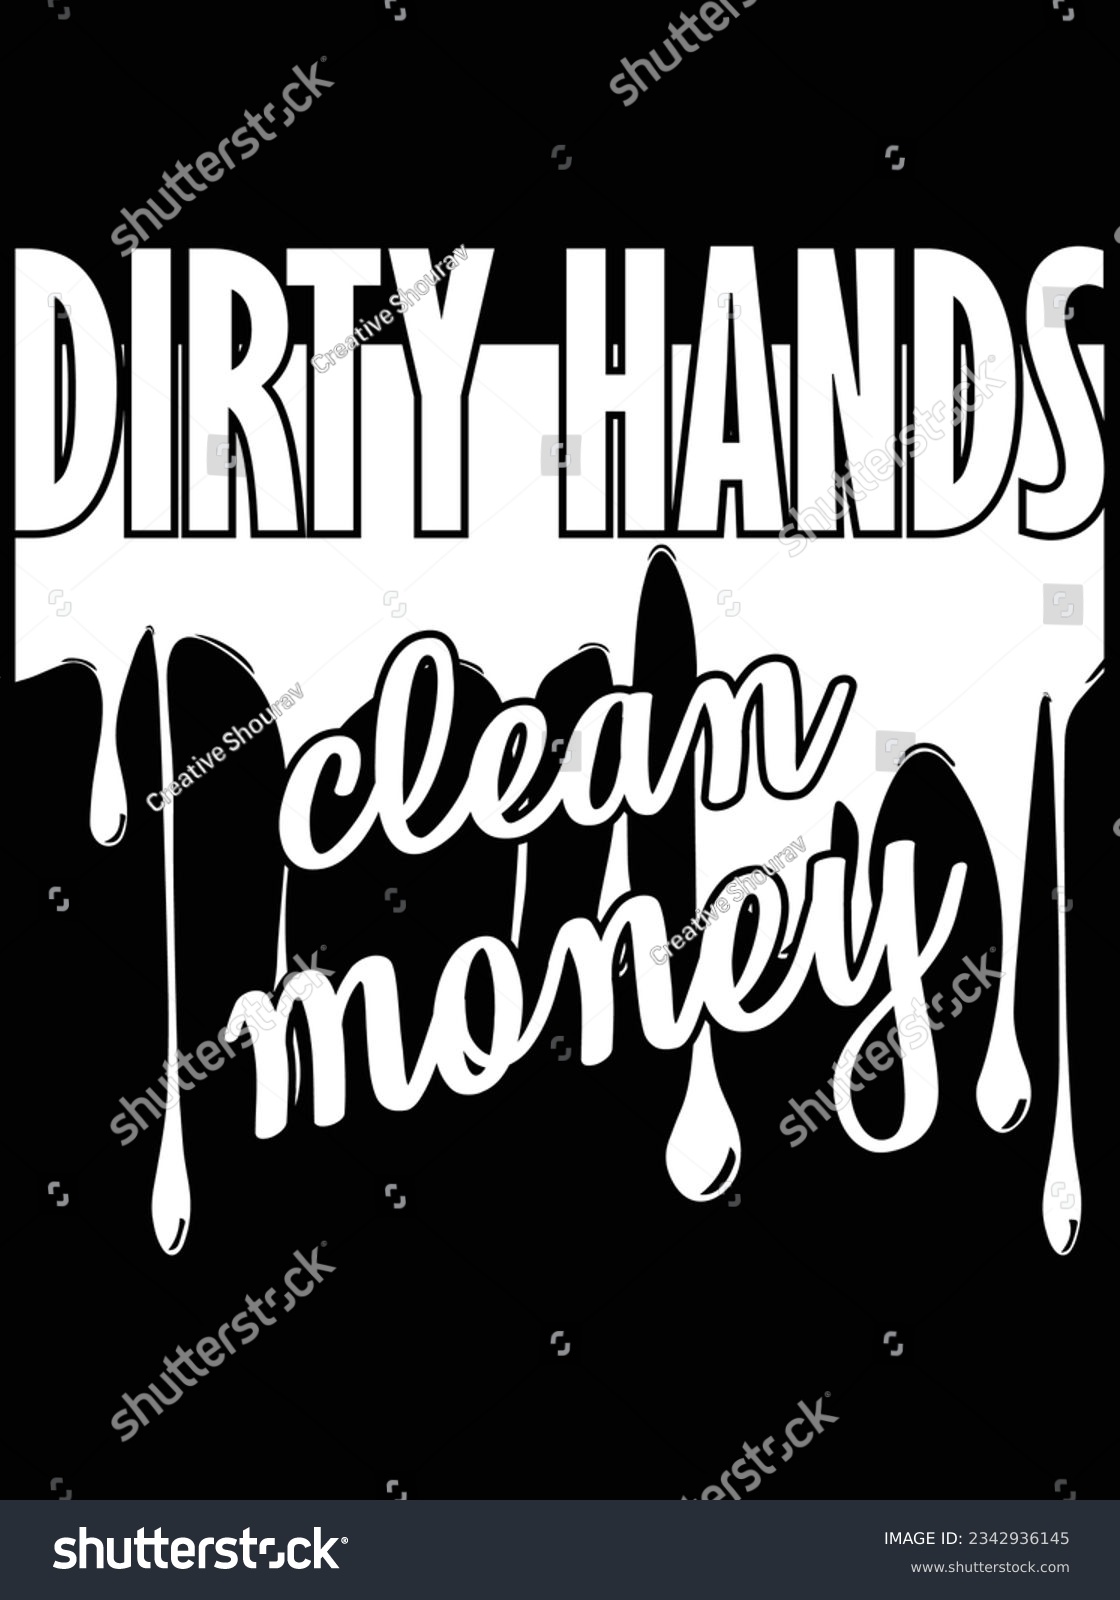 SVG of Dirty hands clean money vector art design, eps file. design file for t-shirt. SVG, EPS cuttable design file svg